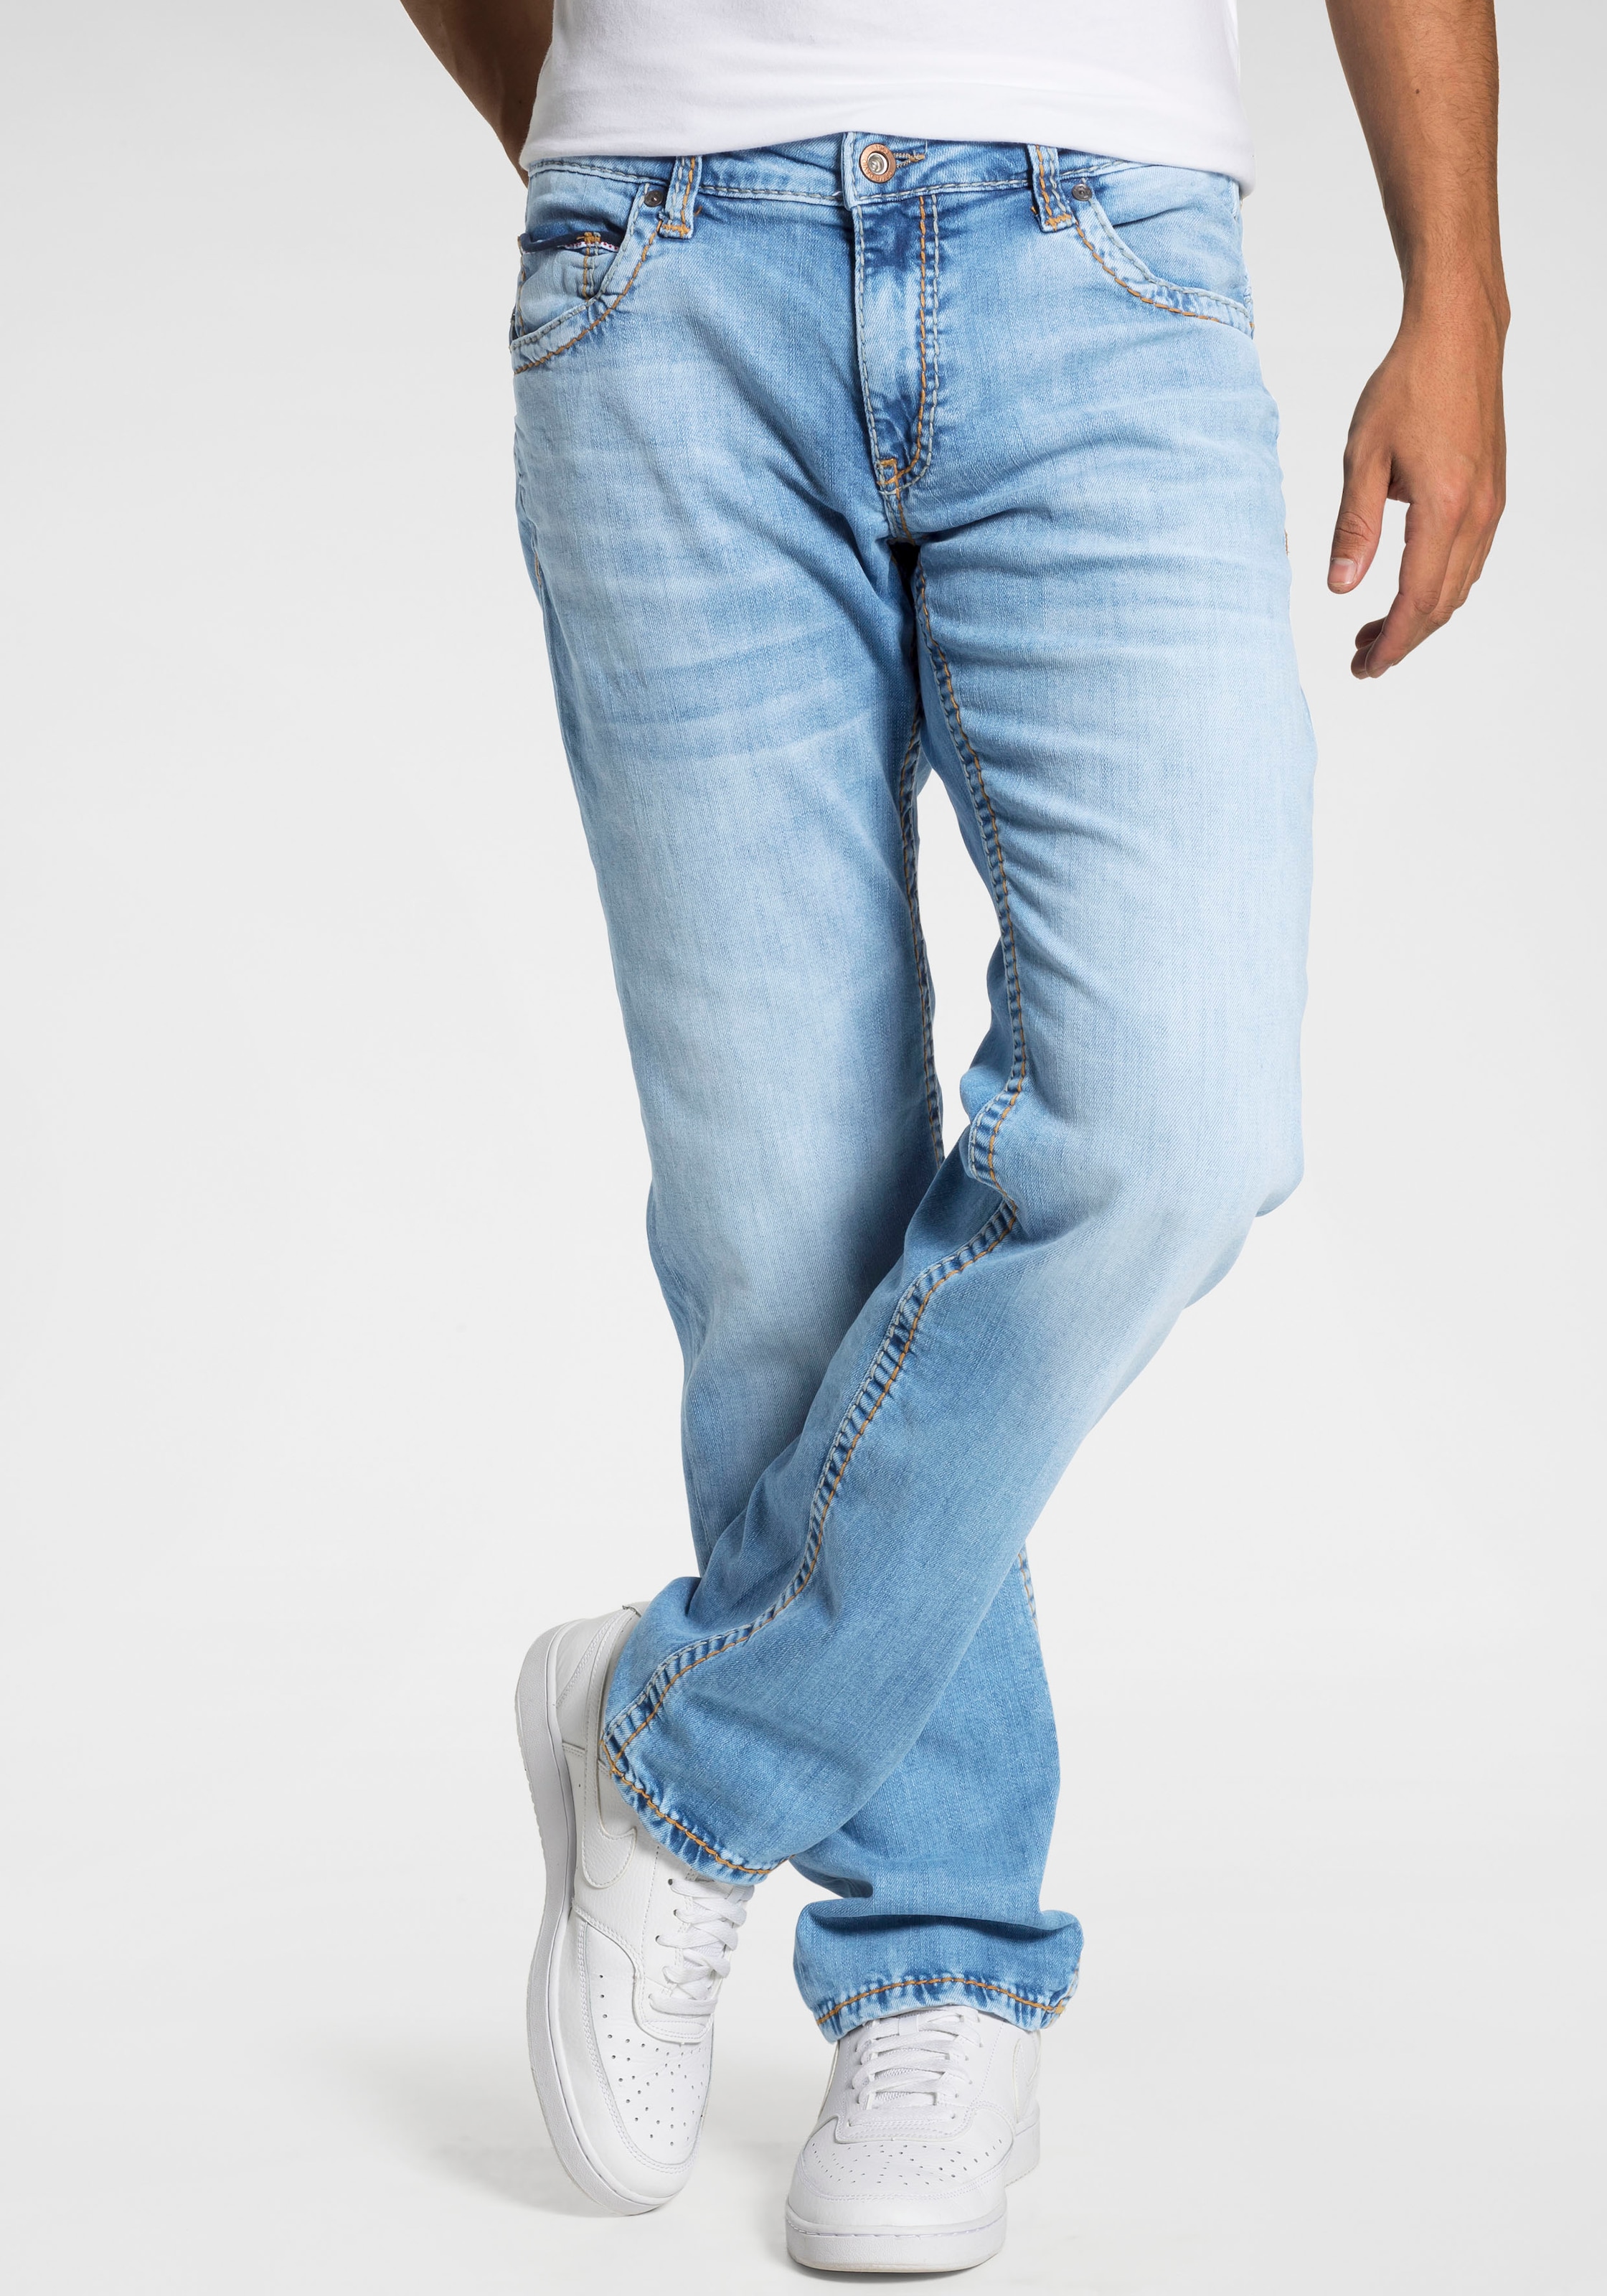 ➤ Bequeme Jeans bestellen versandkostenfrei